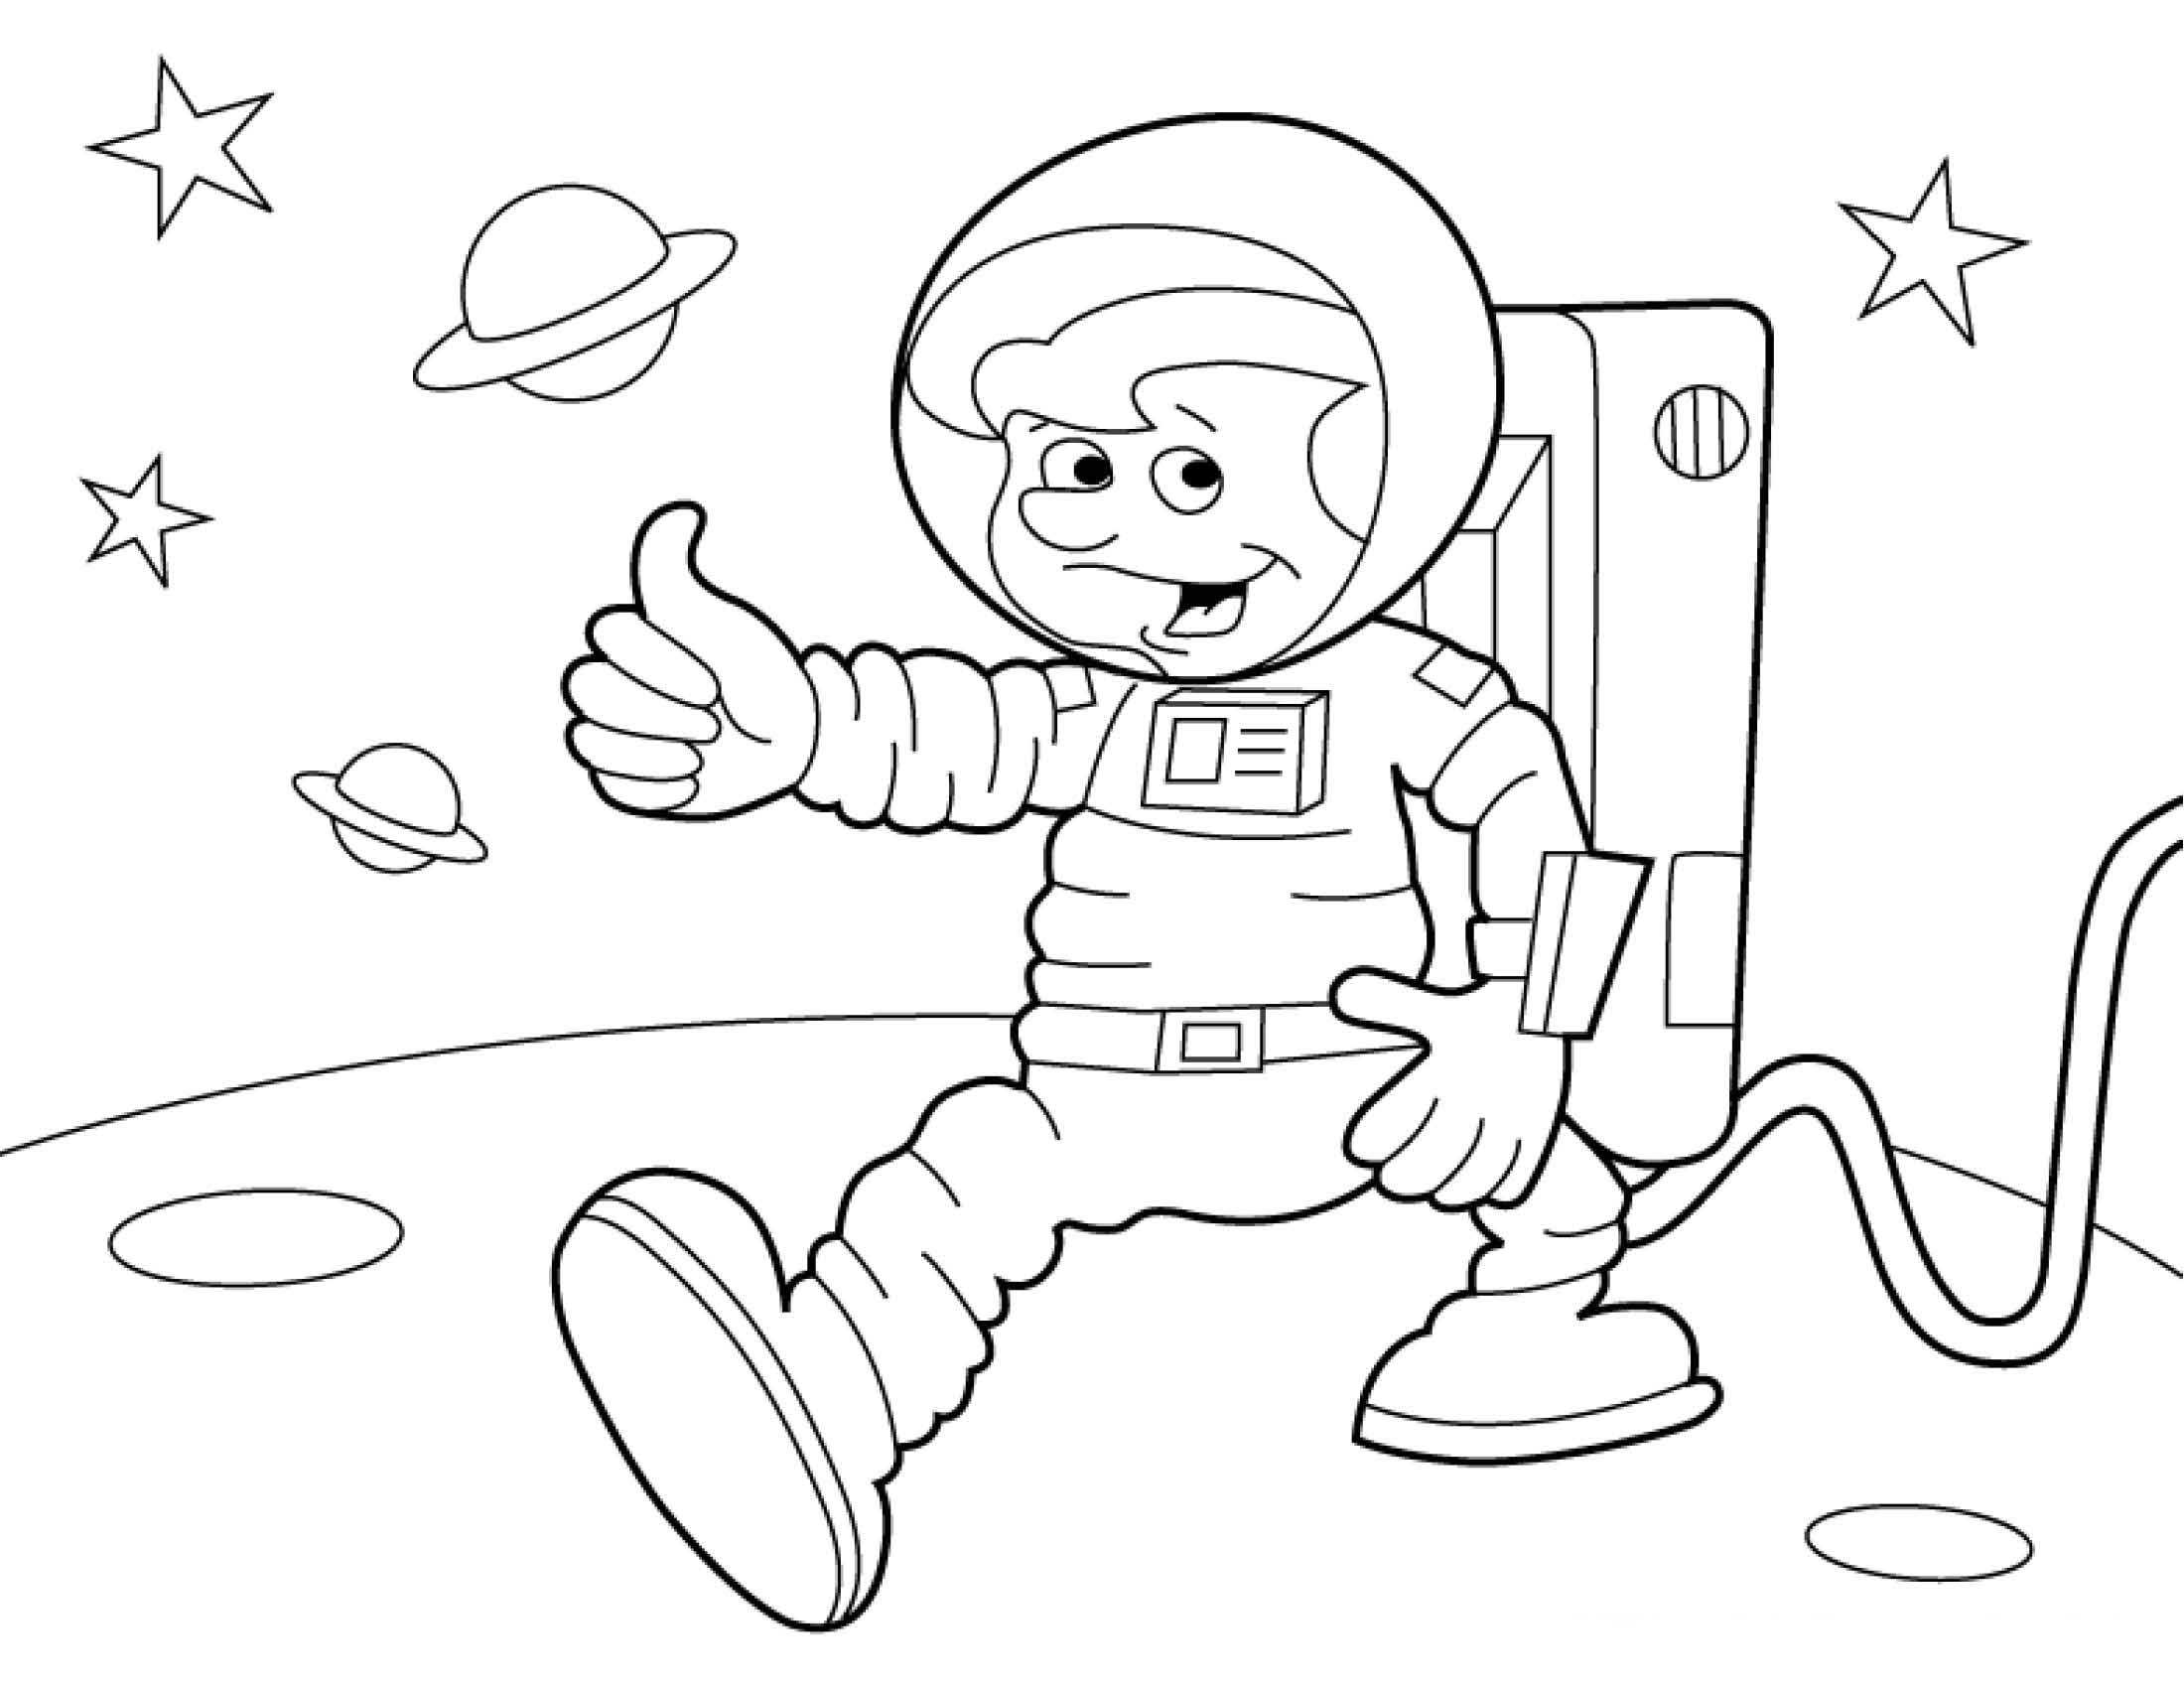 Раскраски 12 апреля день космонавтики для детей. Космонавт раскраска для детей. Раскраски ко Дню космонавтики. Раскраска день космонавтики для детей. Космонавтика раскраски для детей.